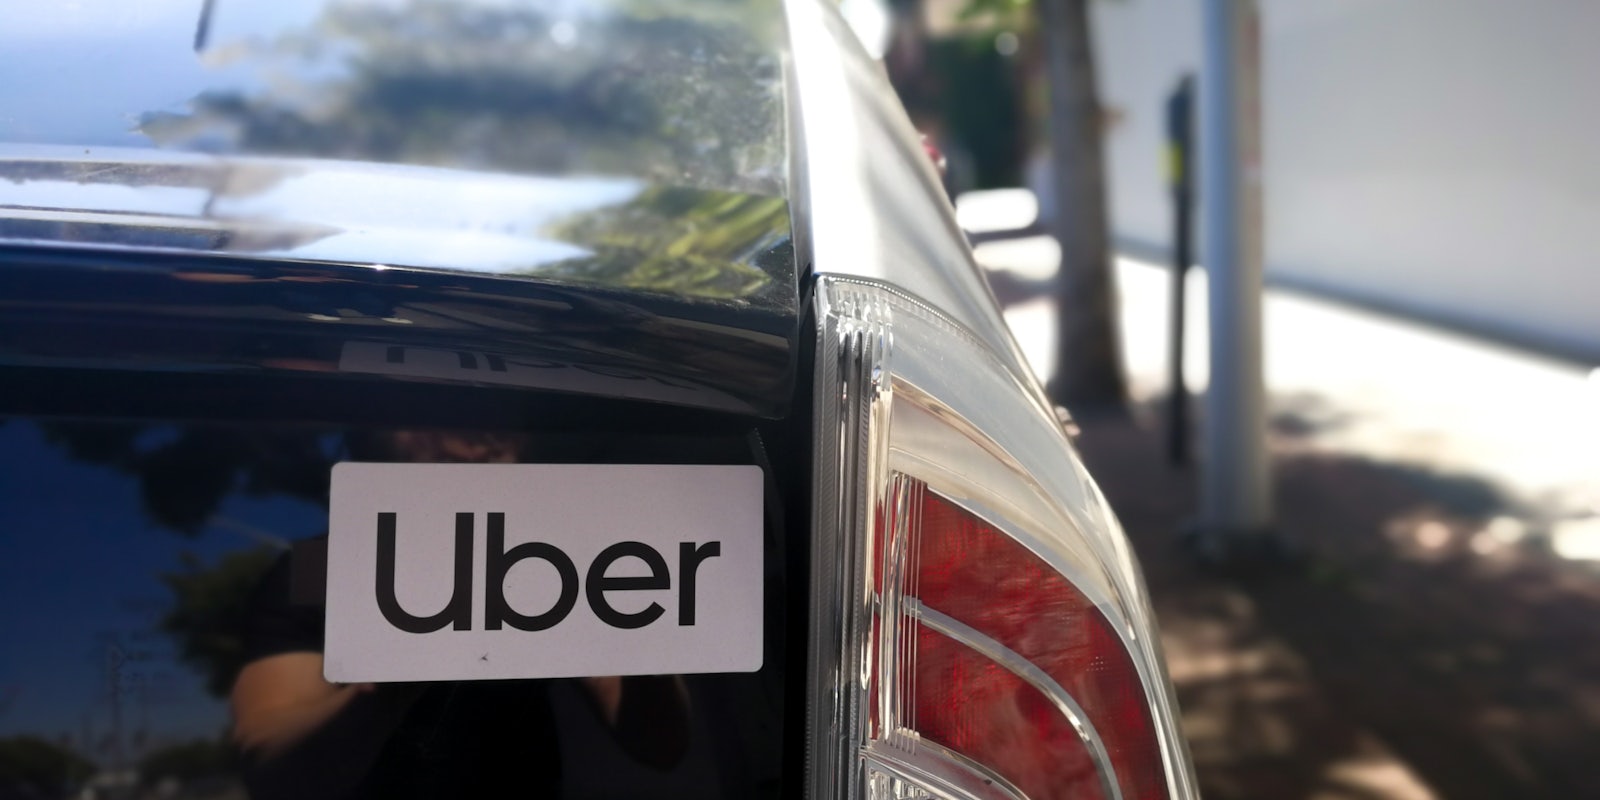 uber sticker on back of car